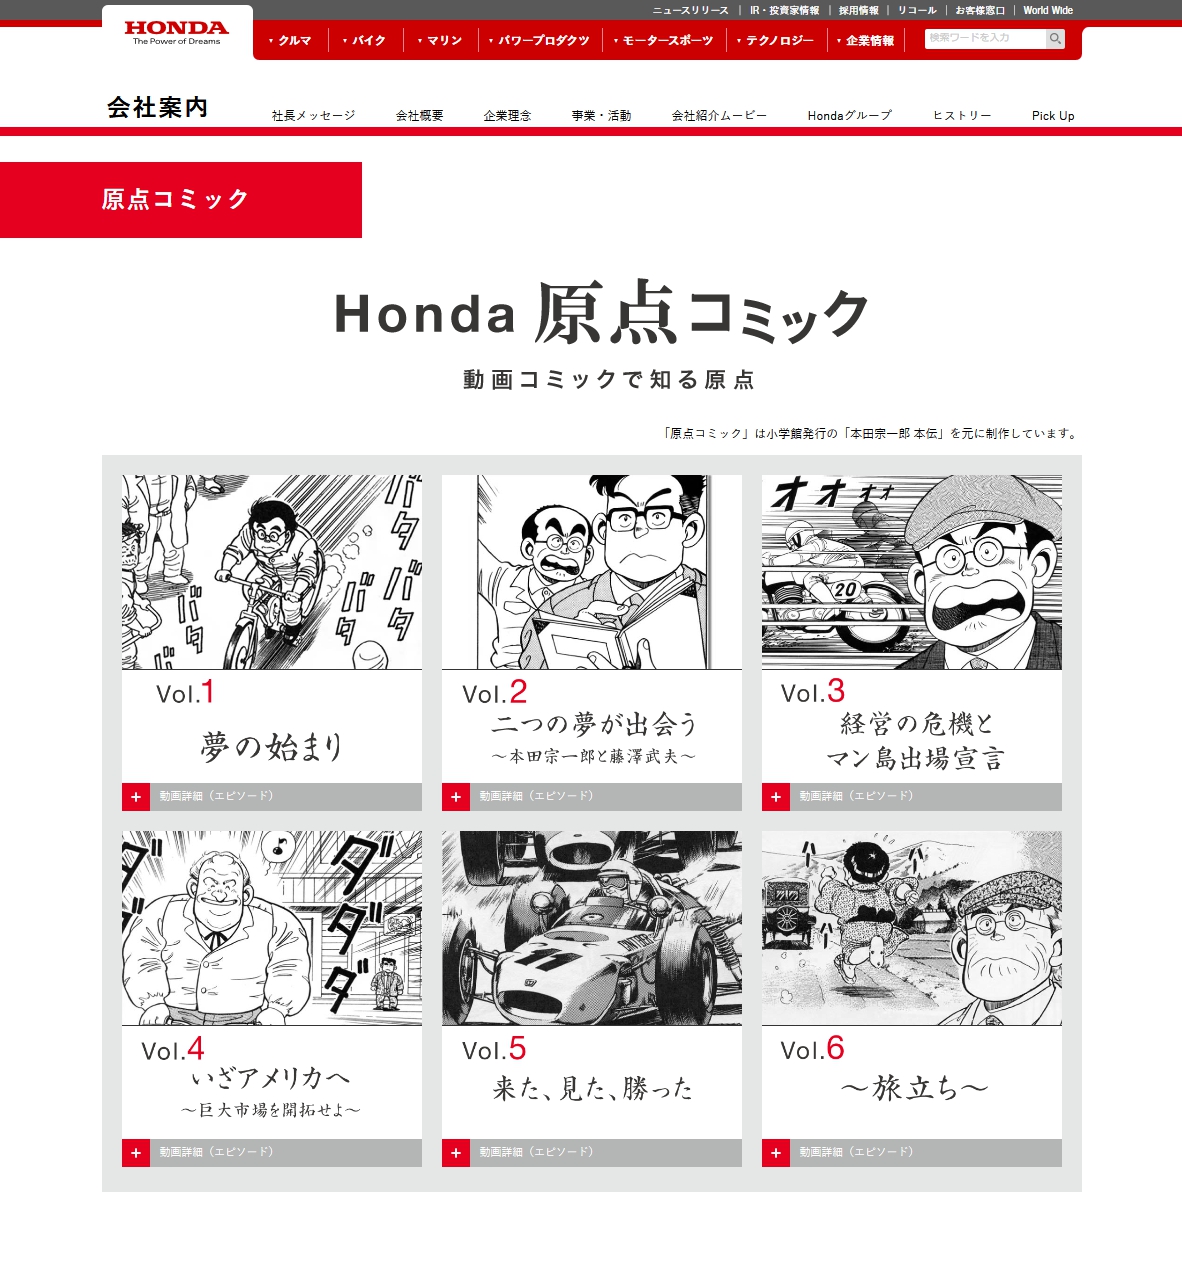 ホンダが公開している『本田宗一郎』の伝記！動画コミック｢原点コミック｣が面白い＾＾